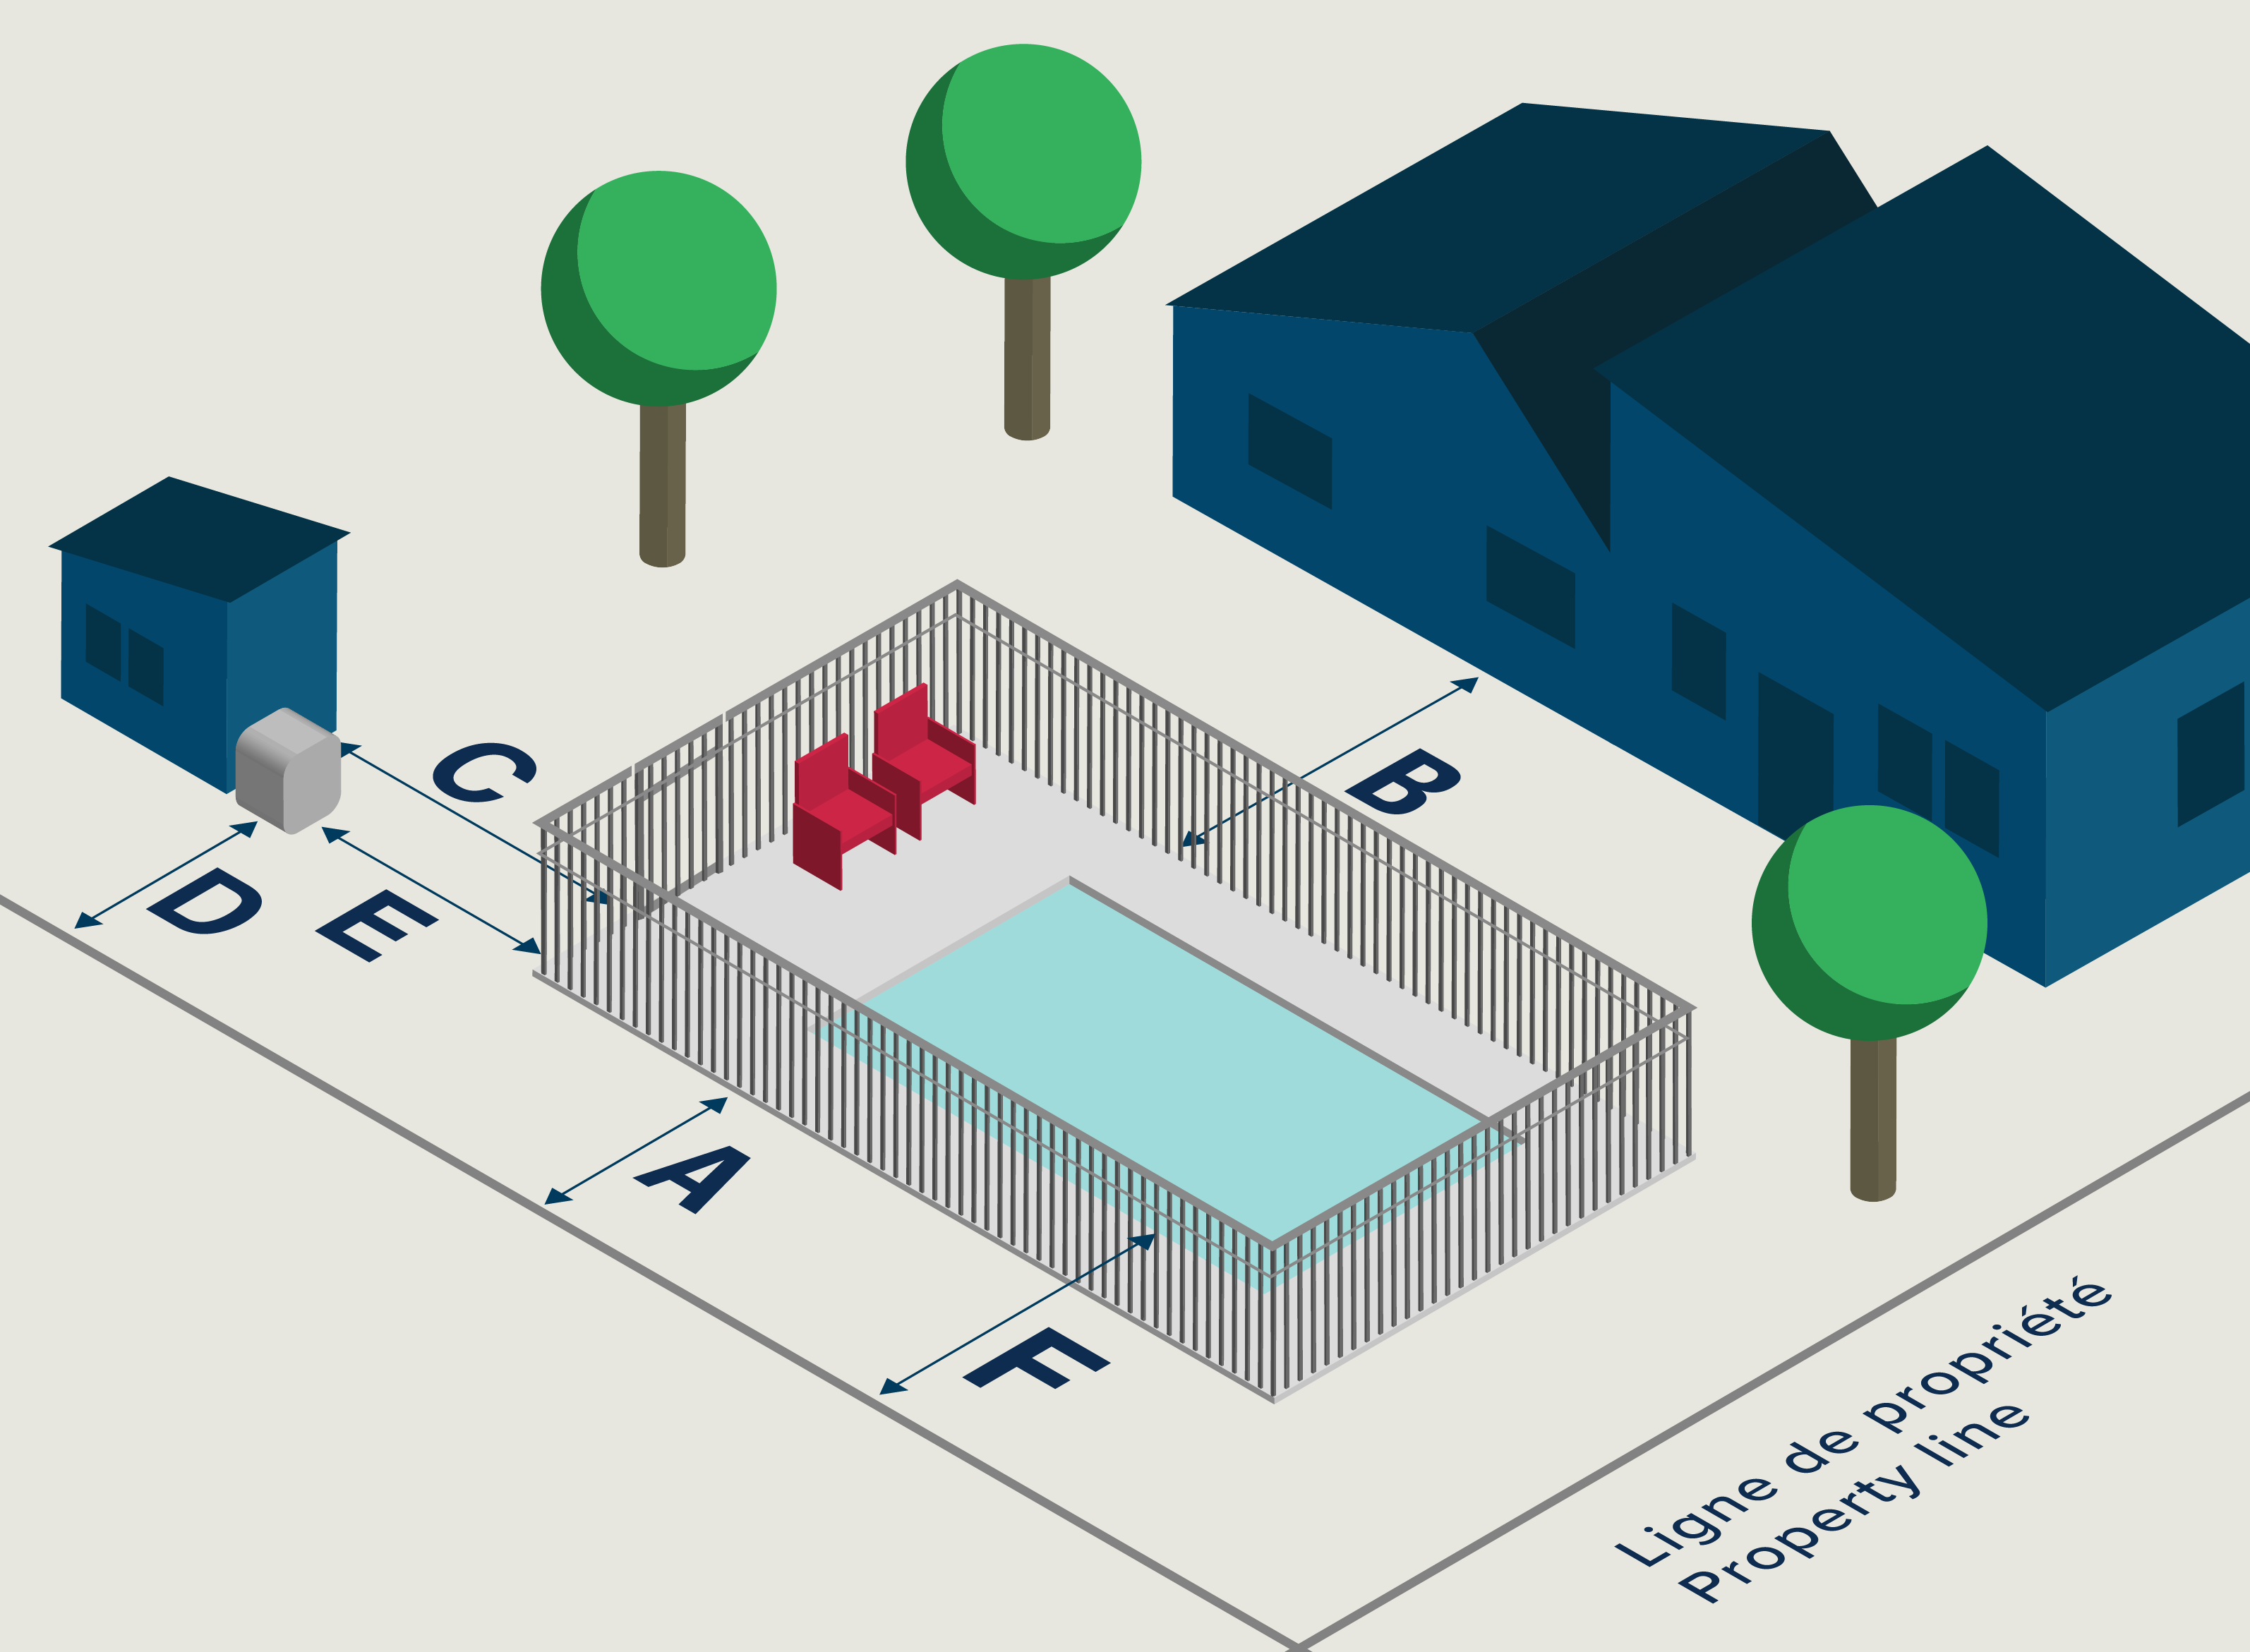 Réglementation sur les clôtures de piscines résidentielles